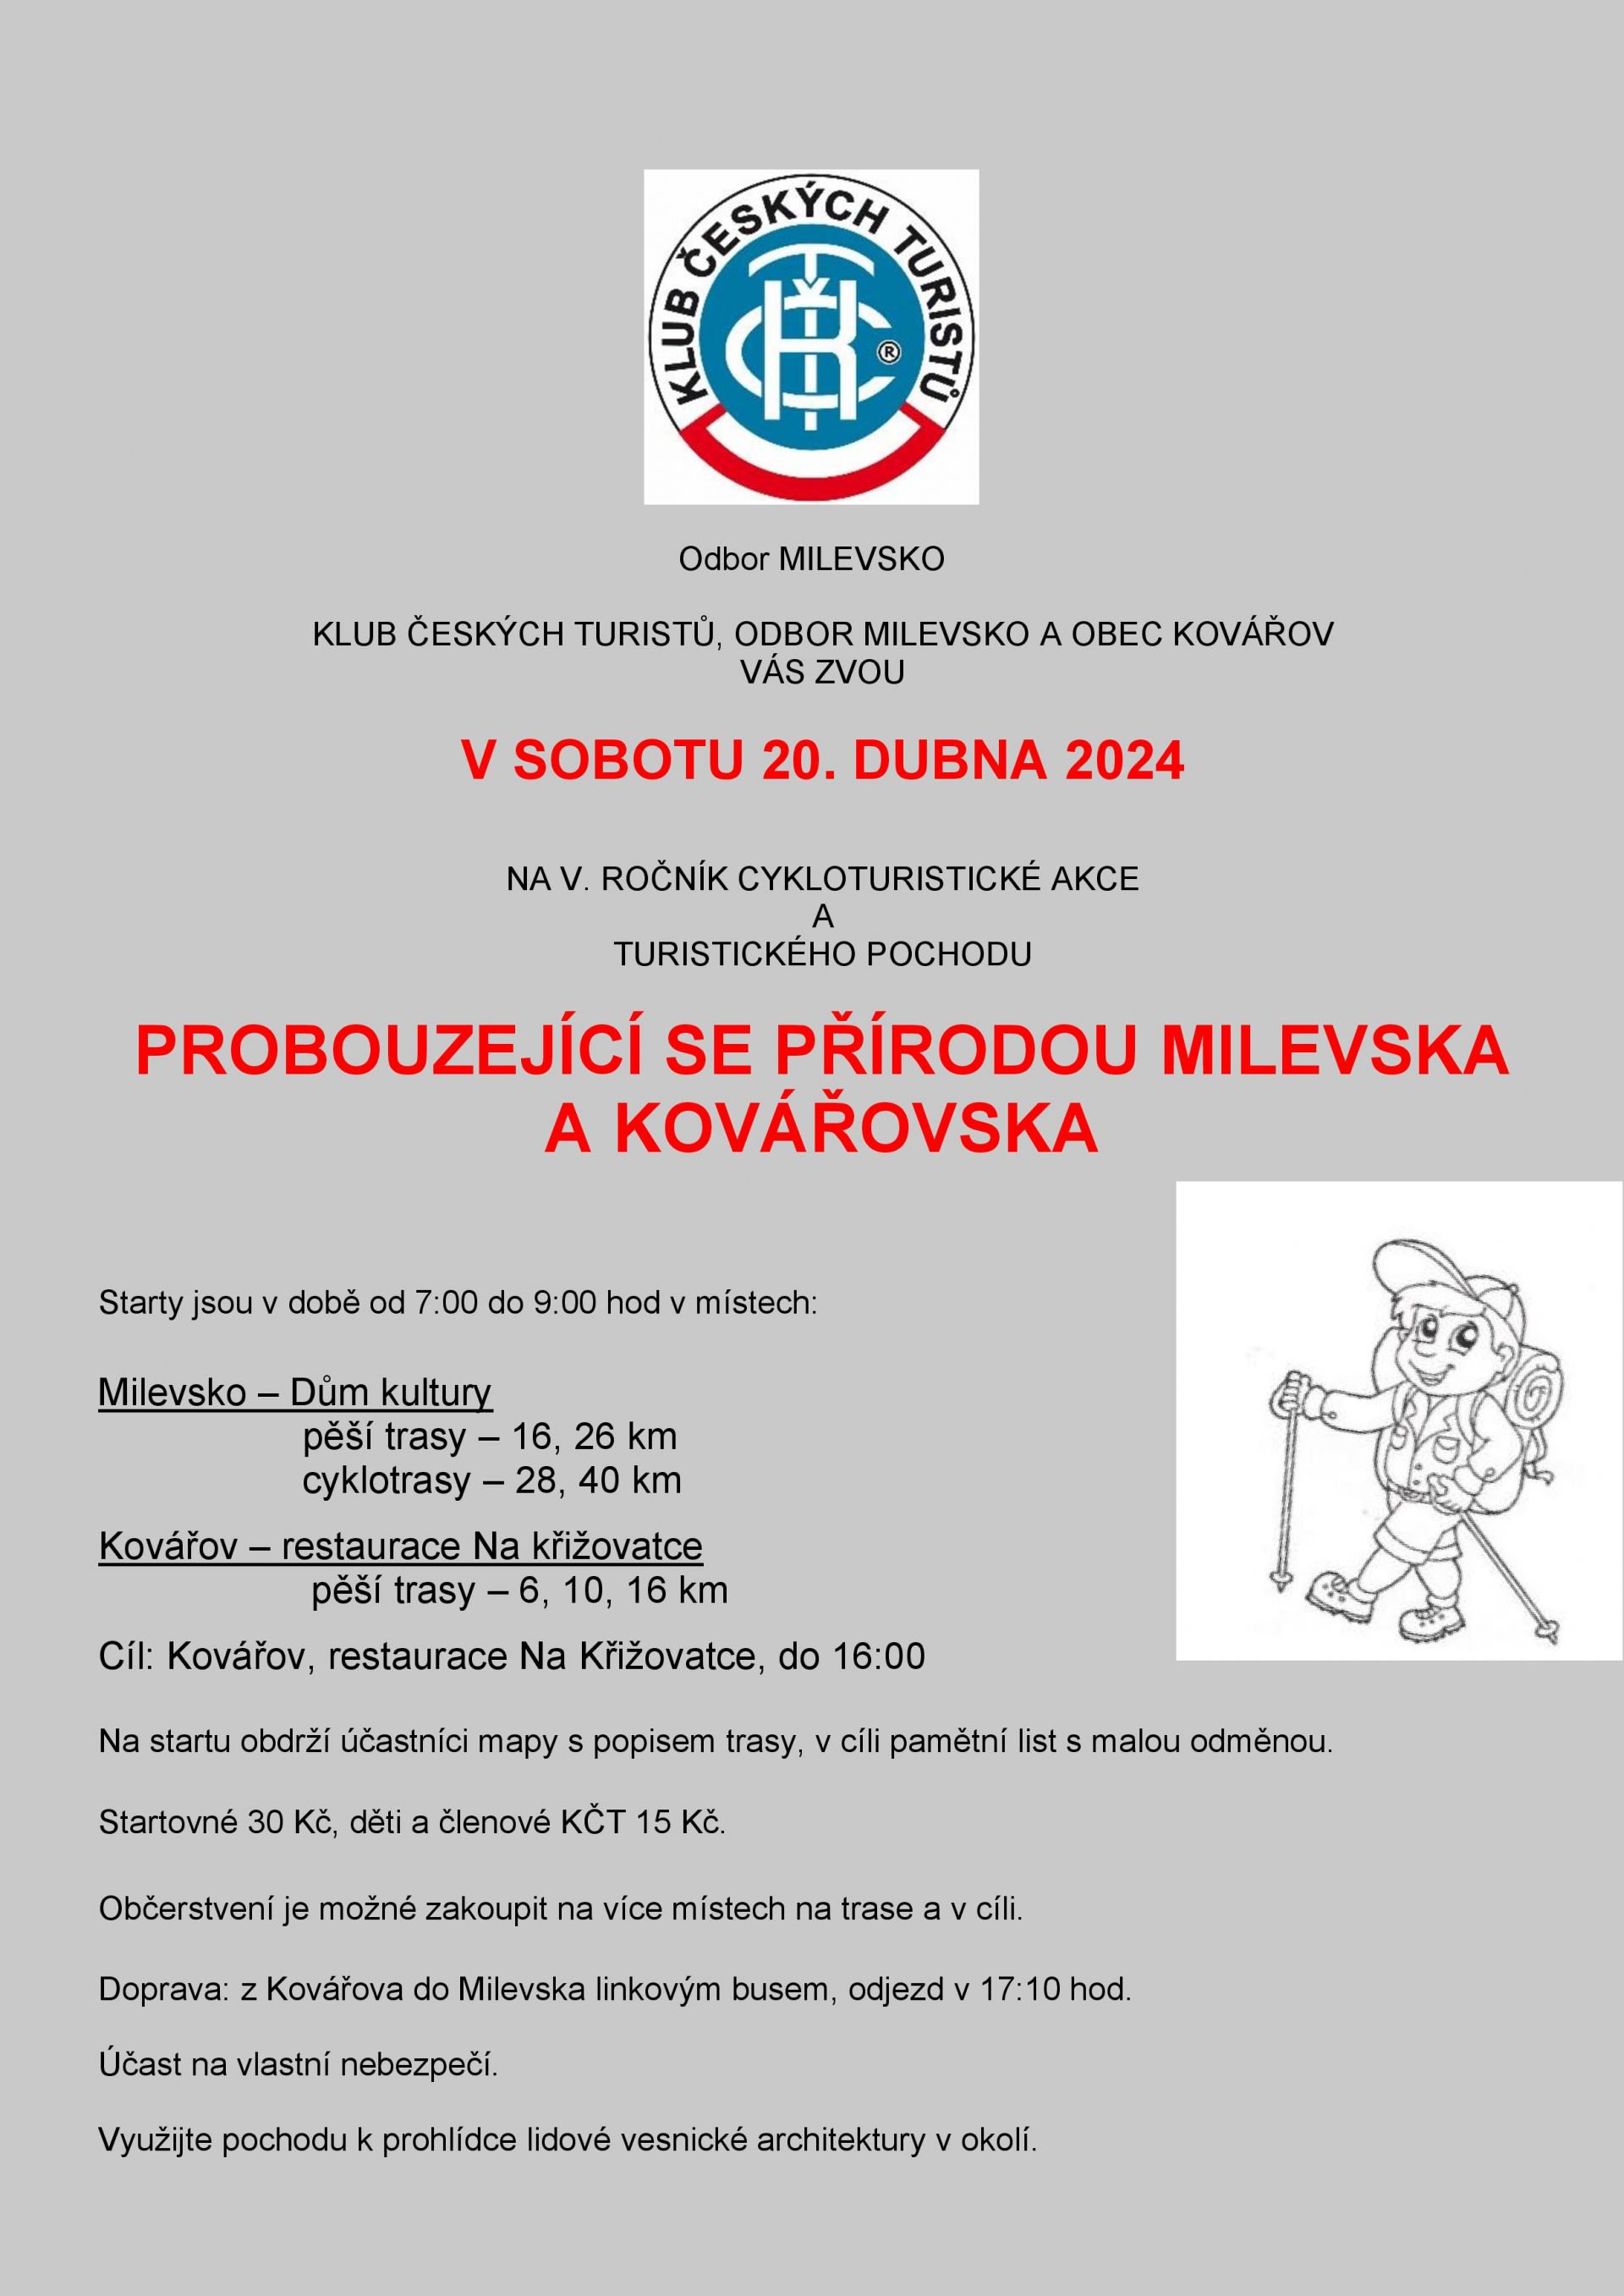 Plakát Pochod probouzející se přírodou Milevska a Kovářovska